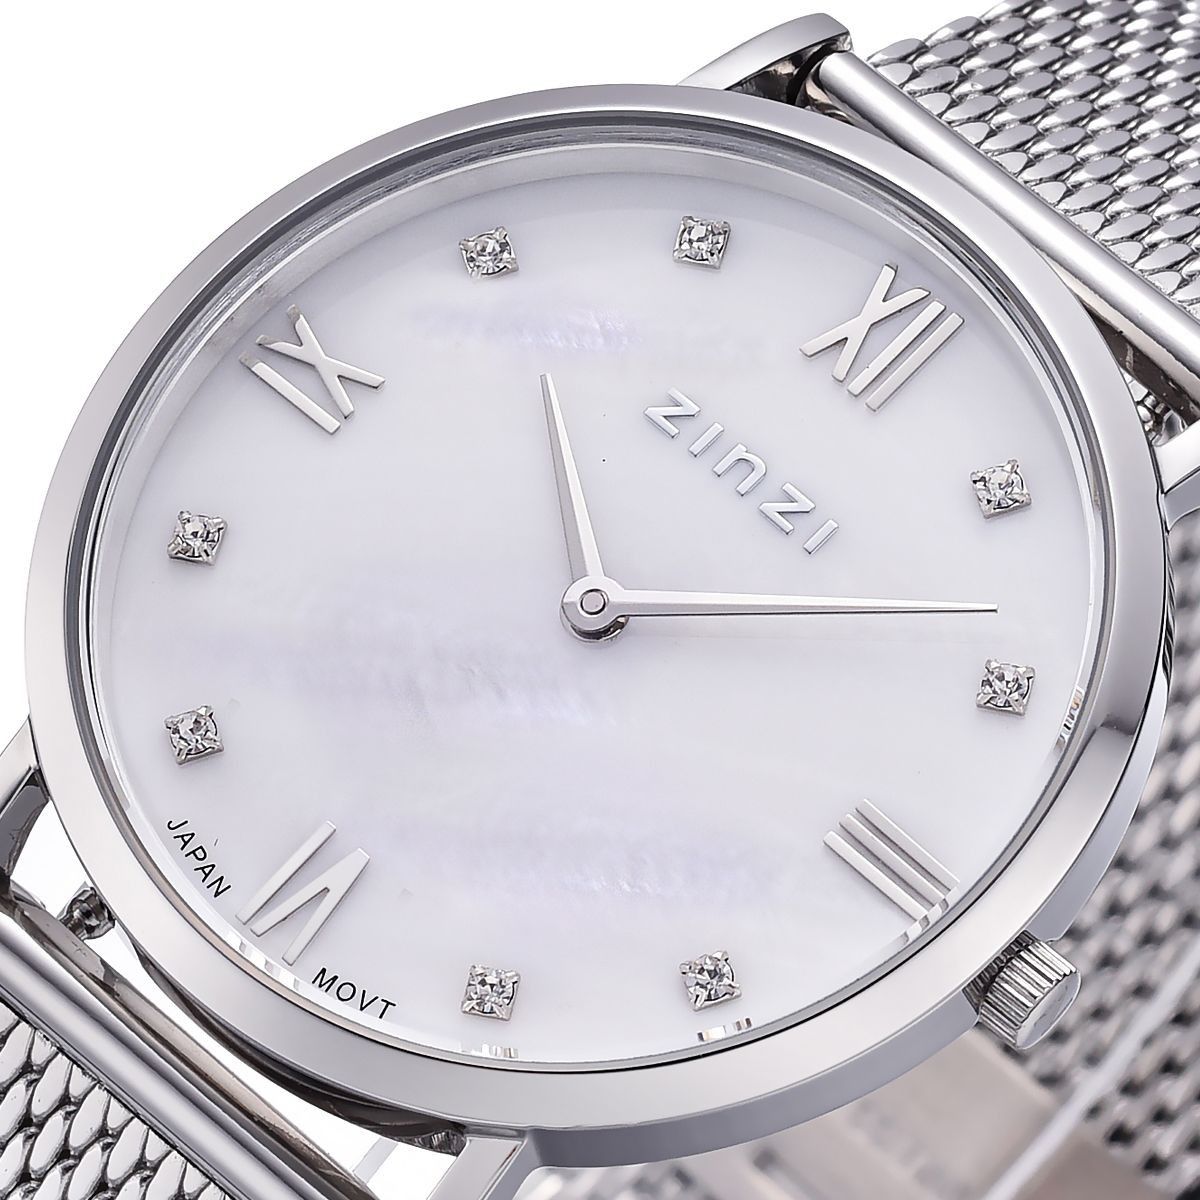 Zinzi horloge ZIW521M Roman 34mm + gratis armband t.w.v. 29,95, exclusief en kwalitatief hoogwaardig. Ontdek nu!